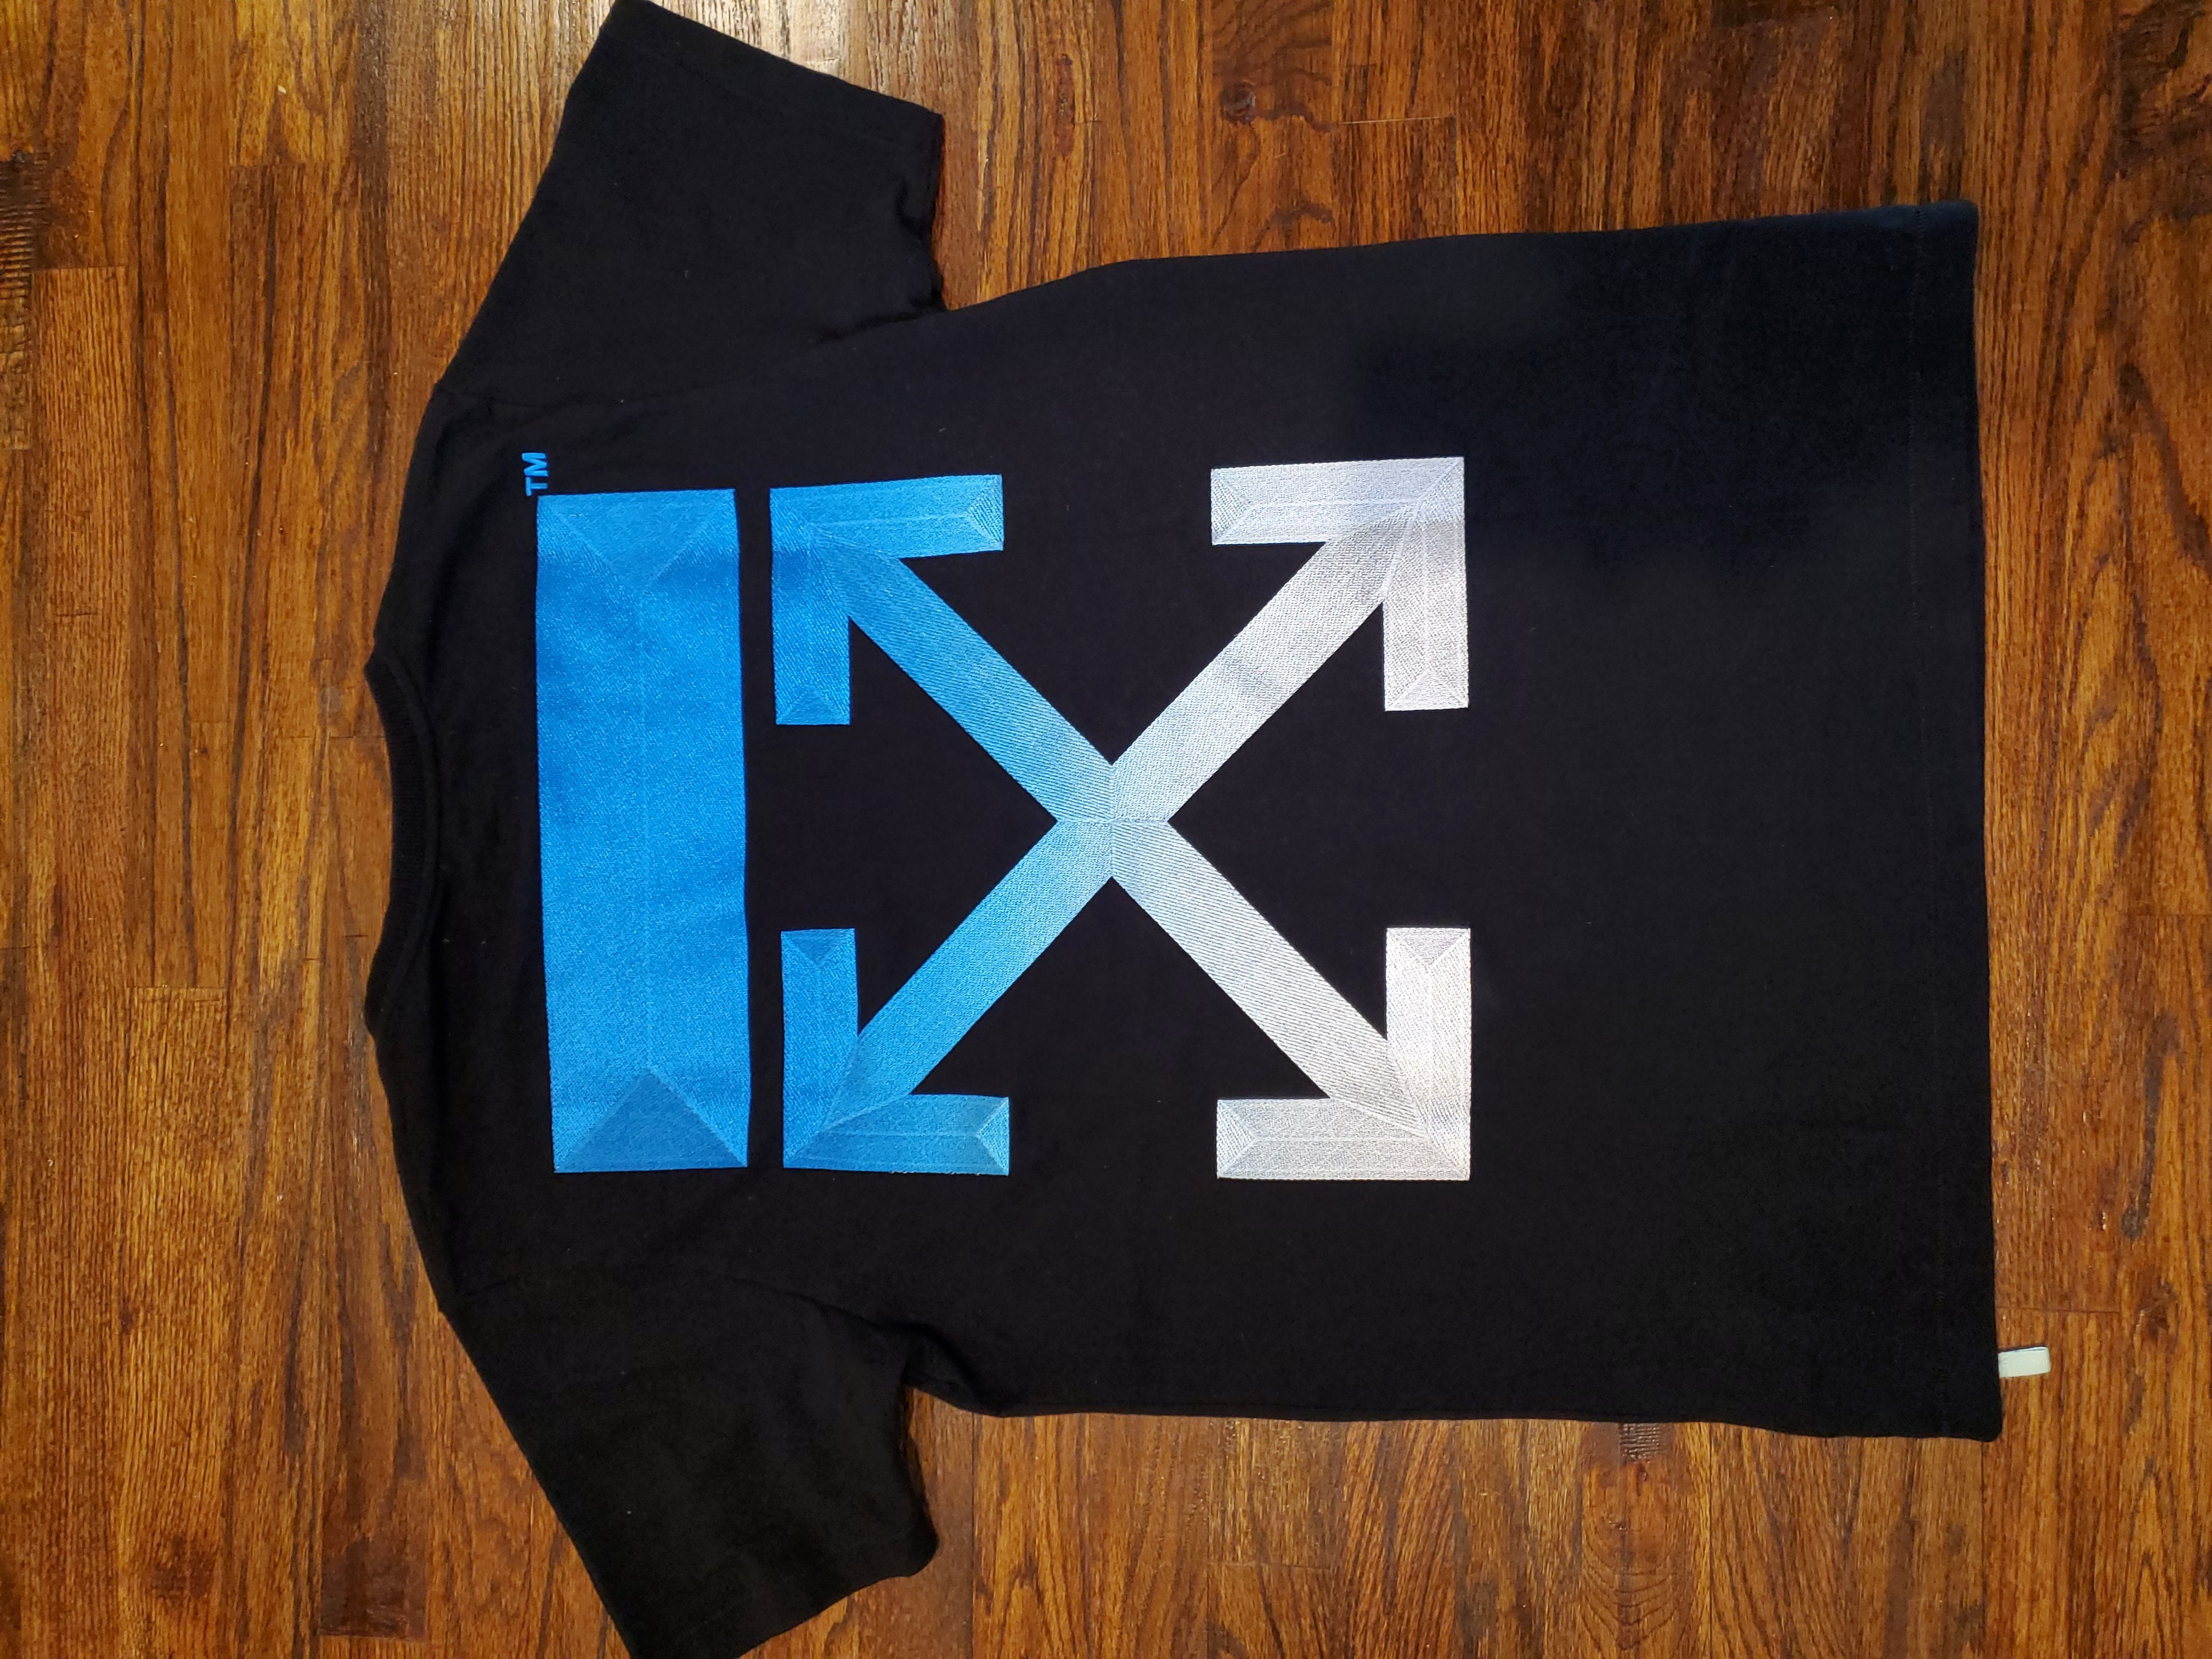 Off-White × Dover Street Market DSM Gradient Black T-Shirt XS BELOW RETAIL